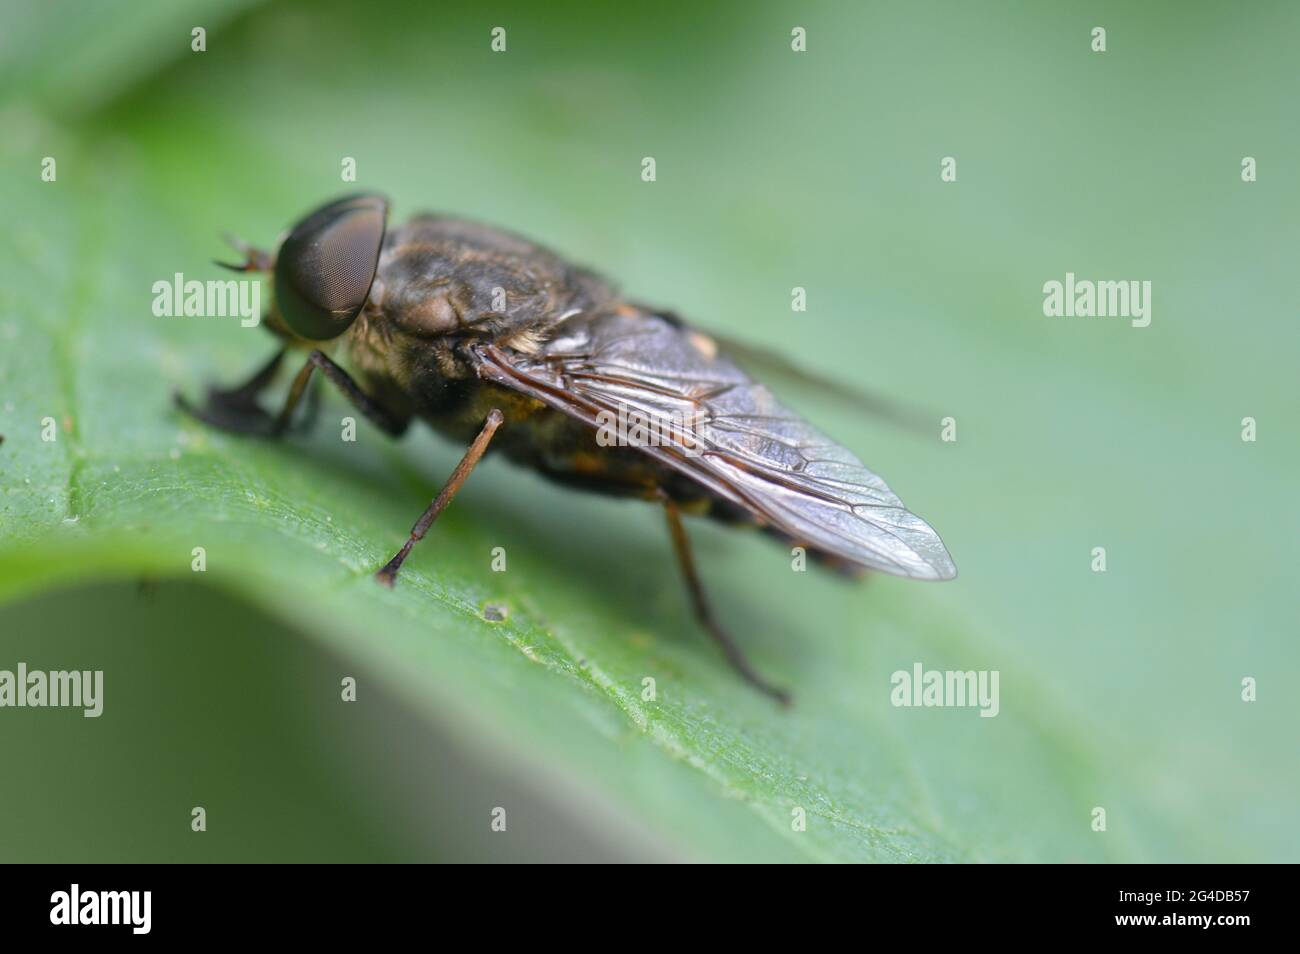 Andrena - Sandbiene - Erdbiene - auf einem Blatt sitzend von links seitlich fotografiert Stock Photo